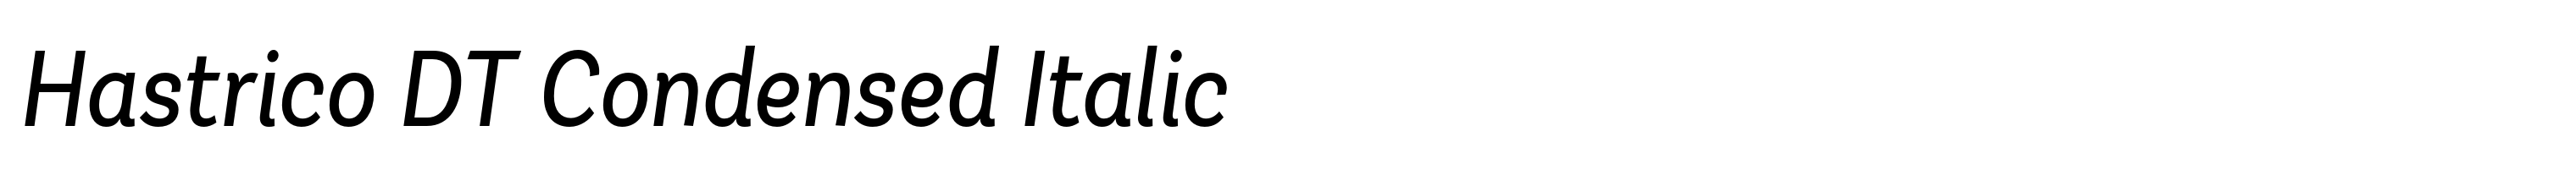 Hastrico DT Condensed Italic